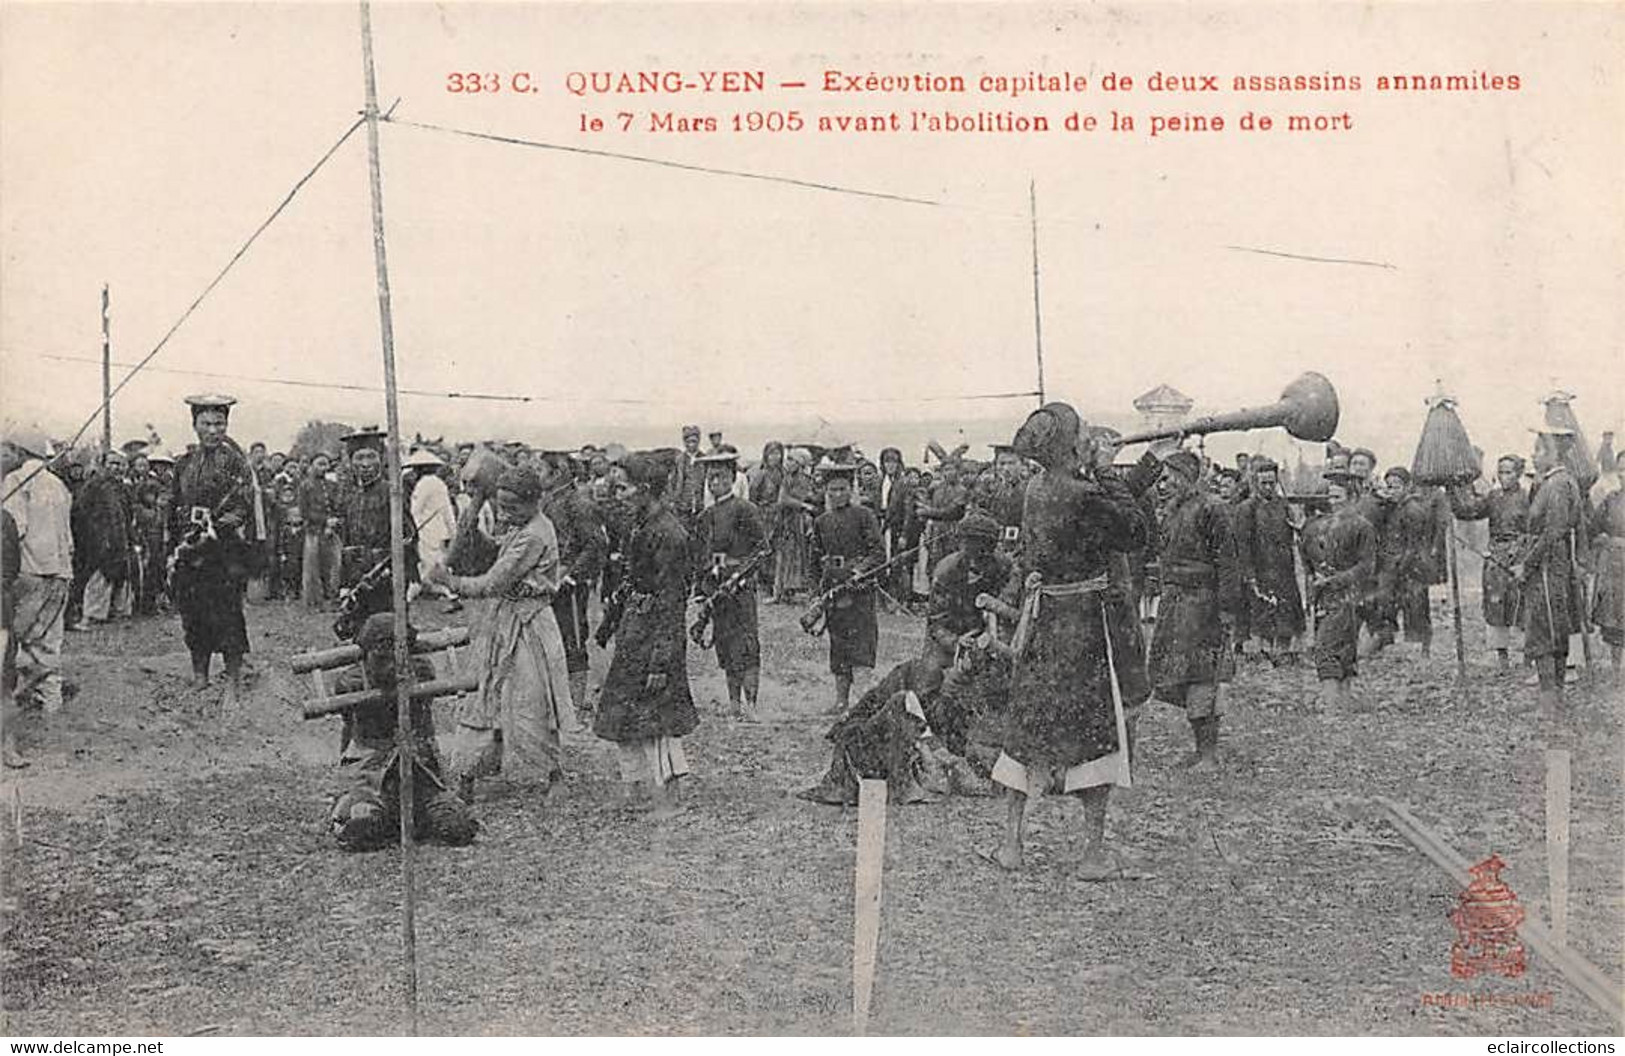 Asie. Viêt-Nam :Tonkin: Justice. Exécution de deux assassins  7 Mars 1905 avant abolition    5 cartes  a Quang-Yen